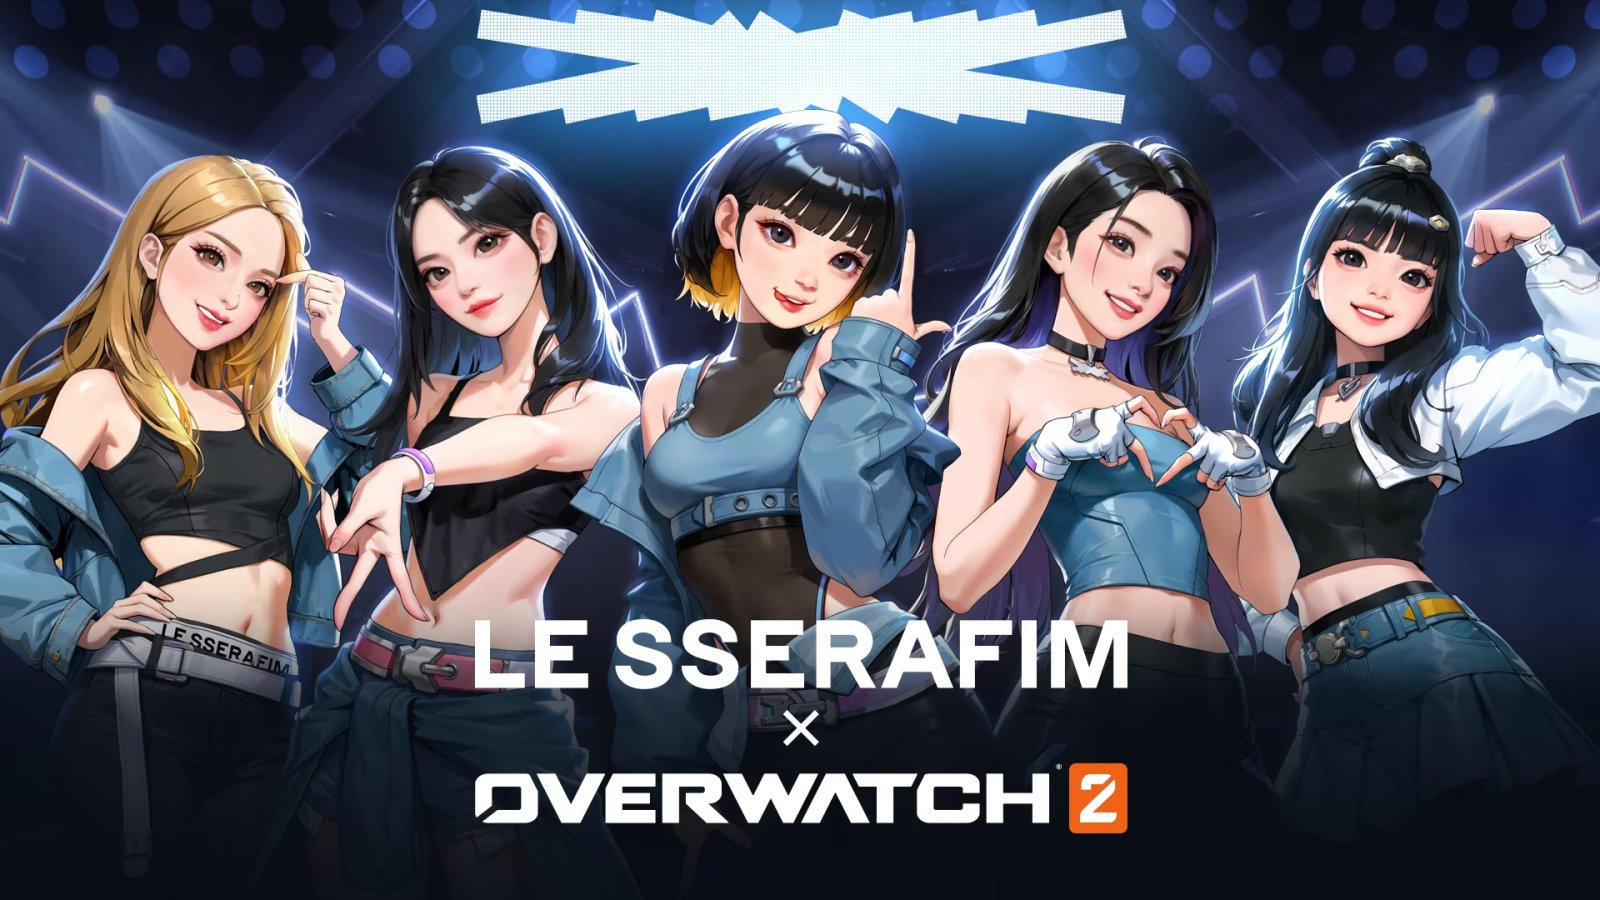 Overwatch 2 x Le Sserafim: annunciato un crossover musicale con il celebre gruppo K-pop